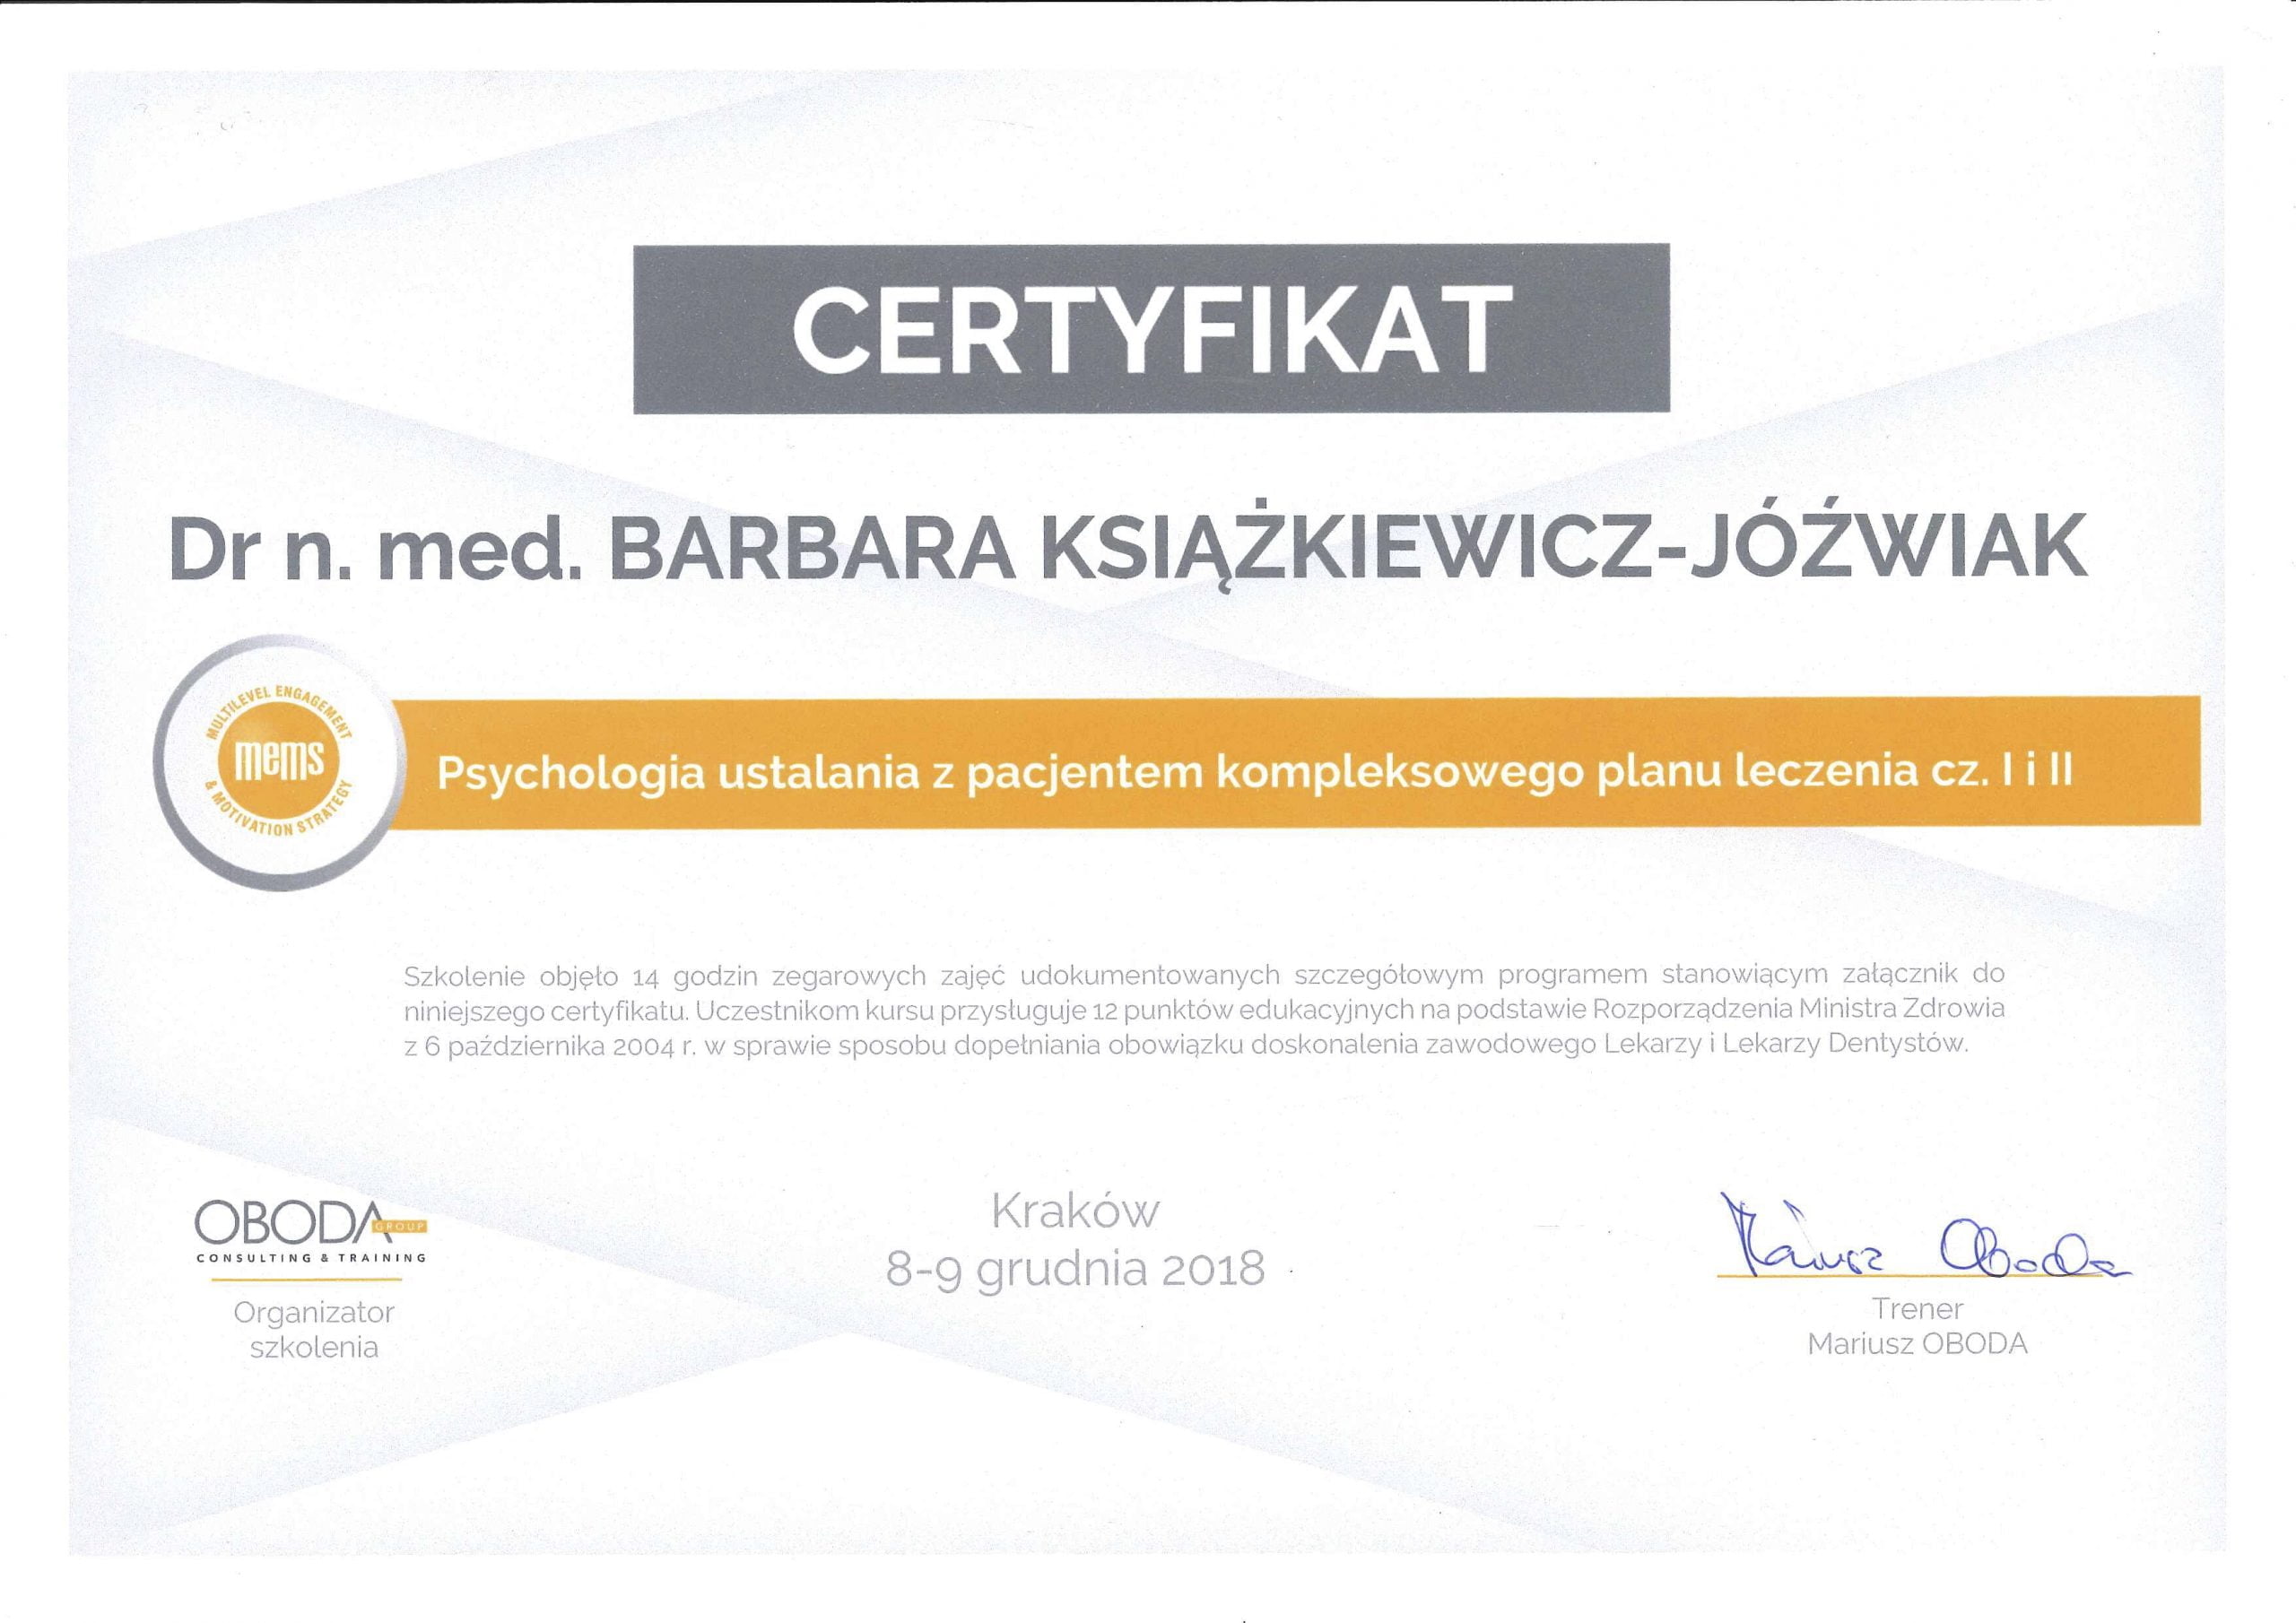 Barbara Książkiewicz-Jóźwiak certyfikat 5